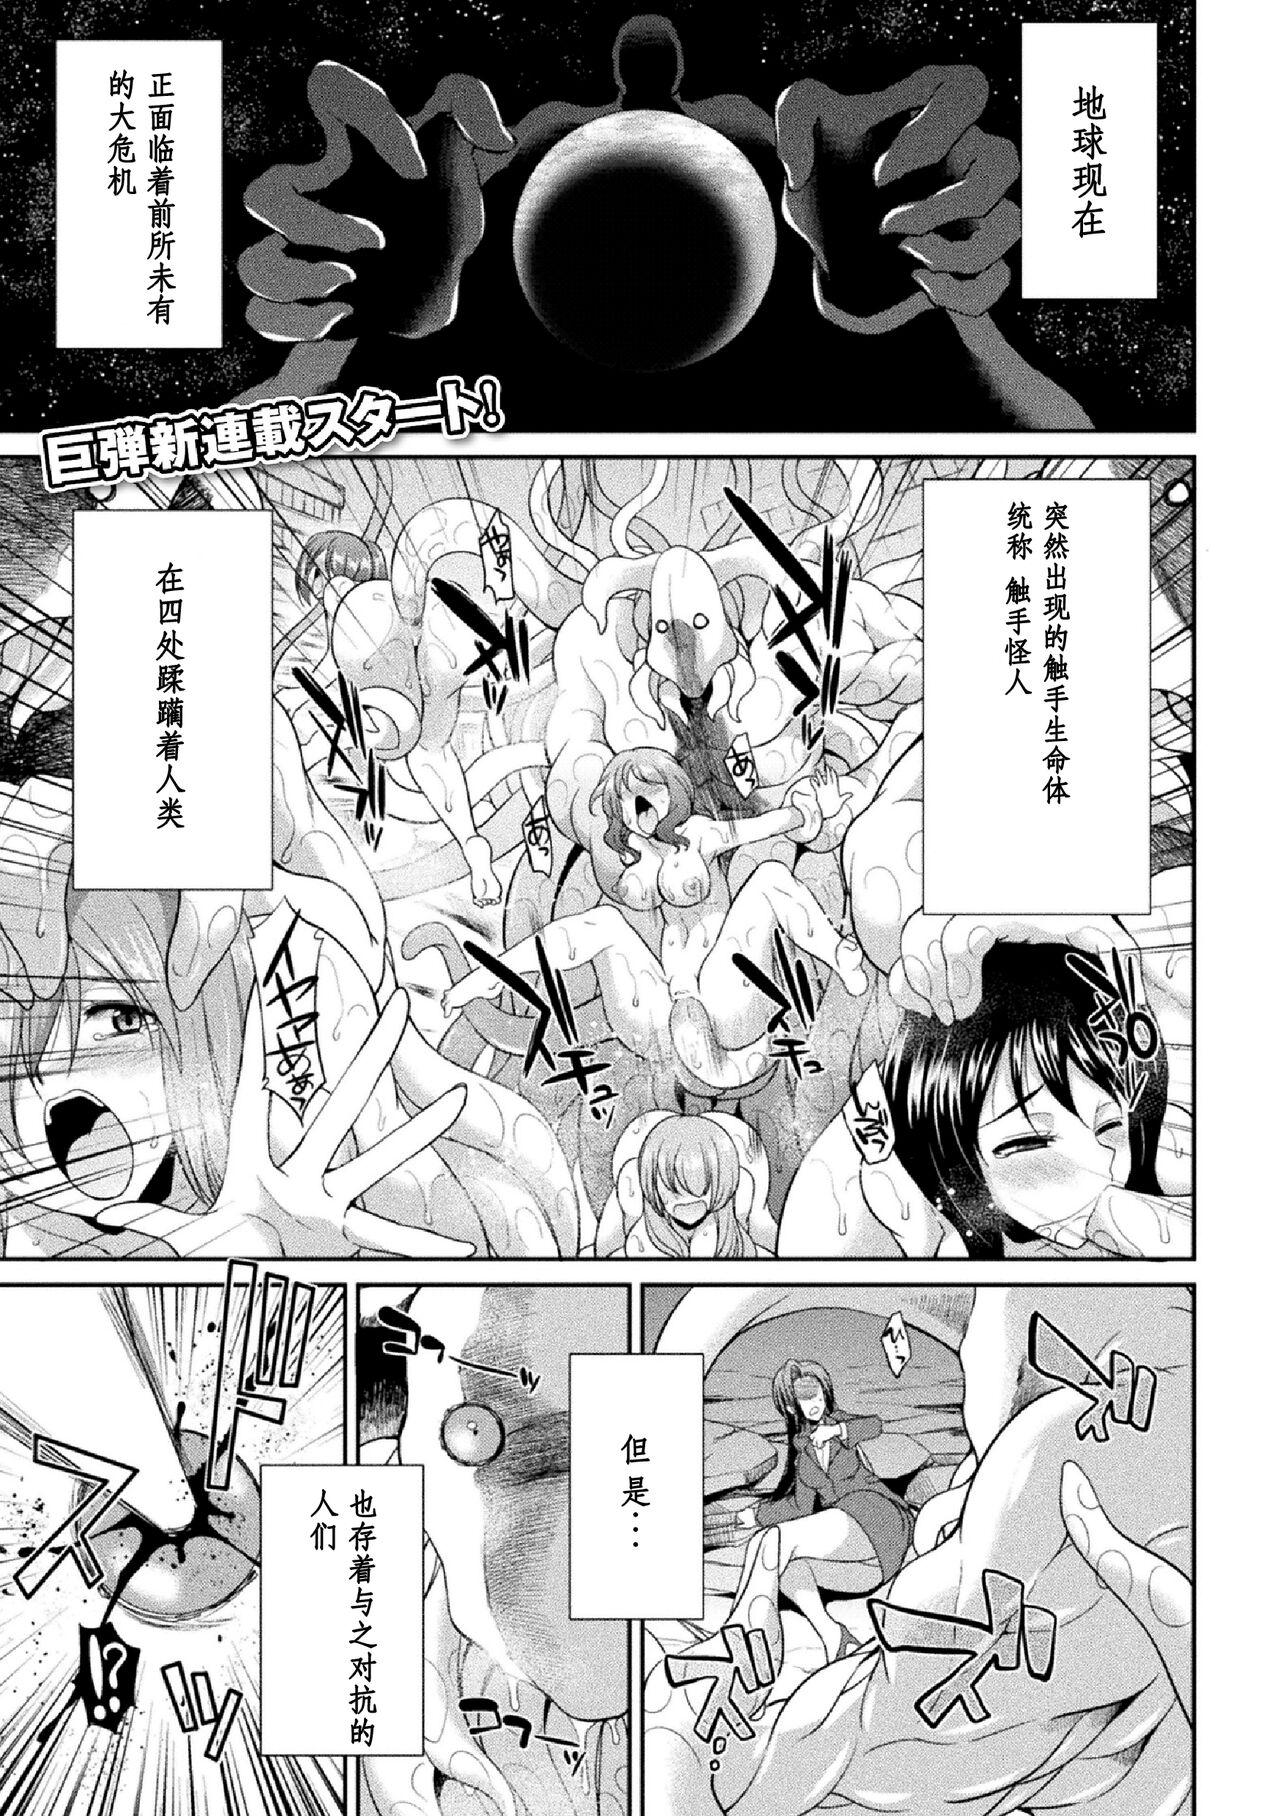 Oralsex Tokumu Sentai Colorful Force Seigi no Heroine vs Shokushu Joou! Futanari Choukyou Daikessen!? Teenporn - Page 5